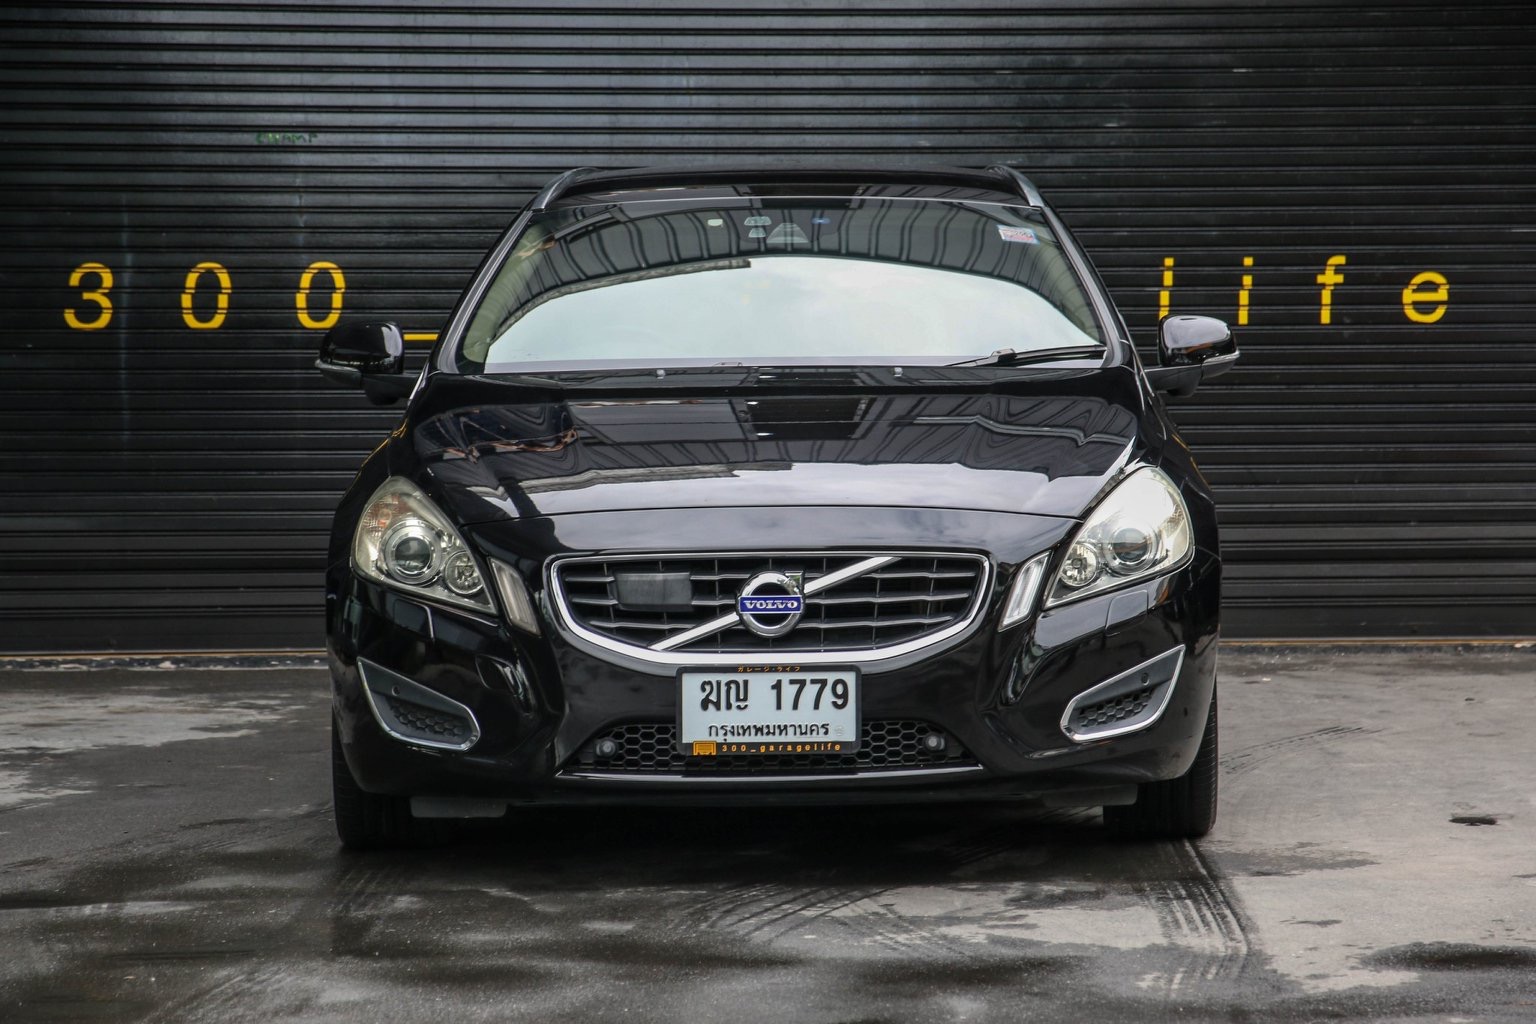 Volvo V60 ปี 2012 สีดำ